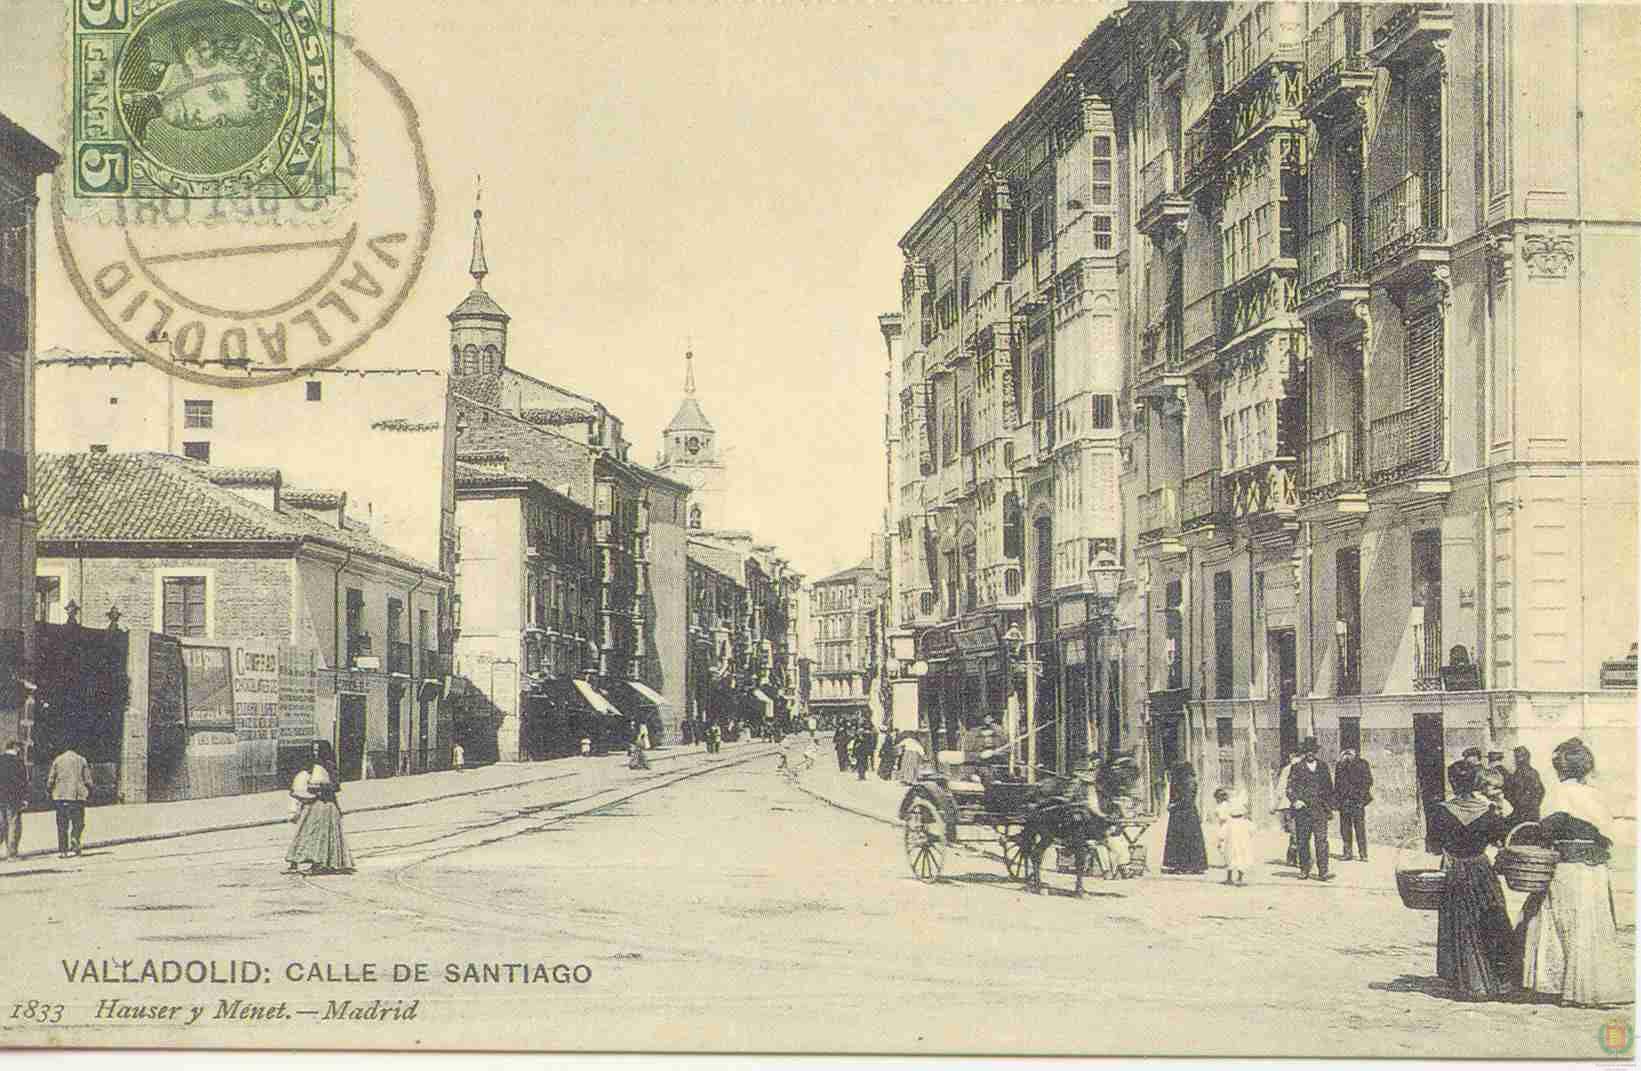 Fotos: Estampas del Valladolid antiguo (XIV): cuando los carros circulaban por la ciudad